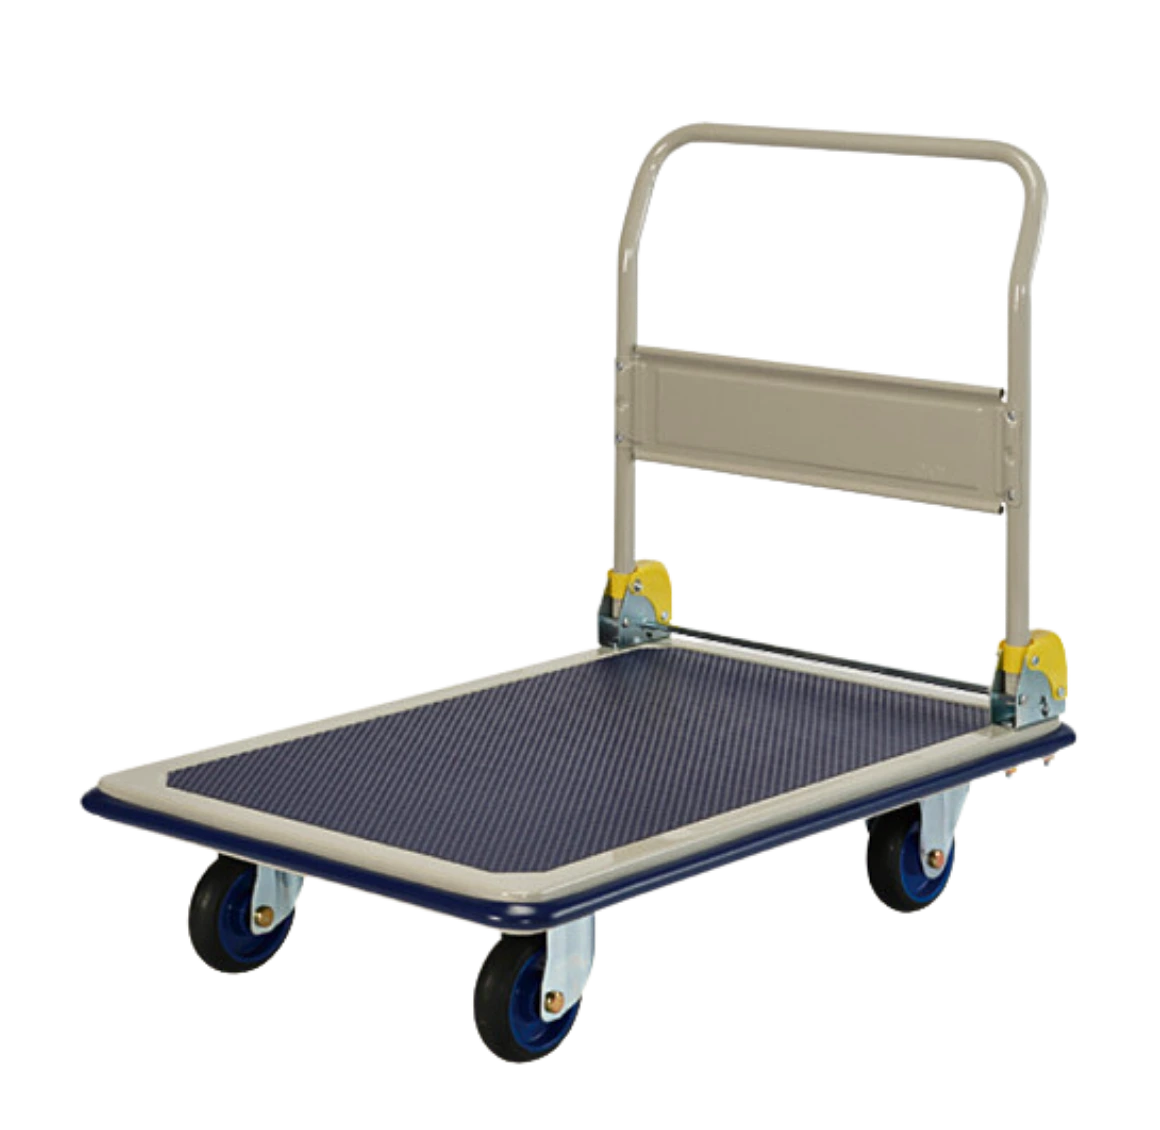 Prestar Platform Trolley, NF-301,300kg